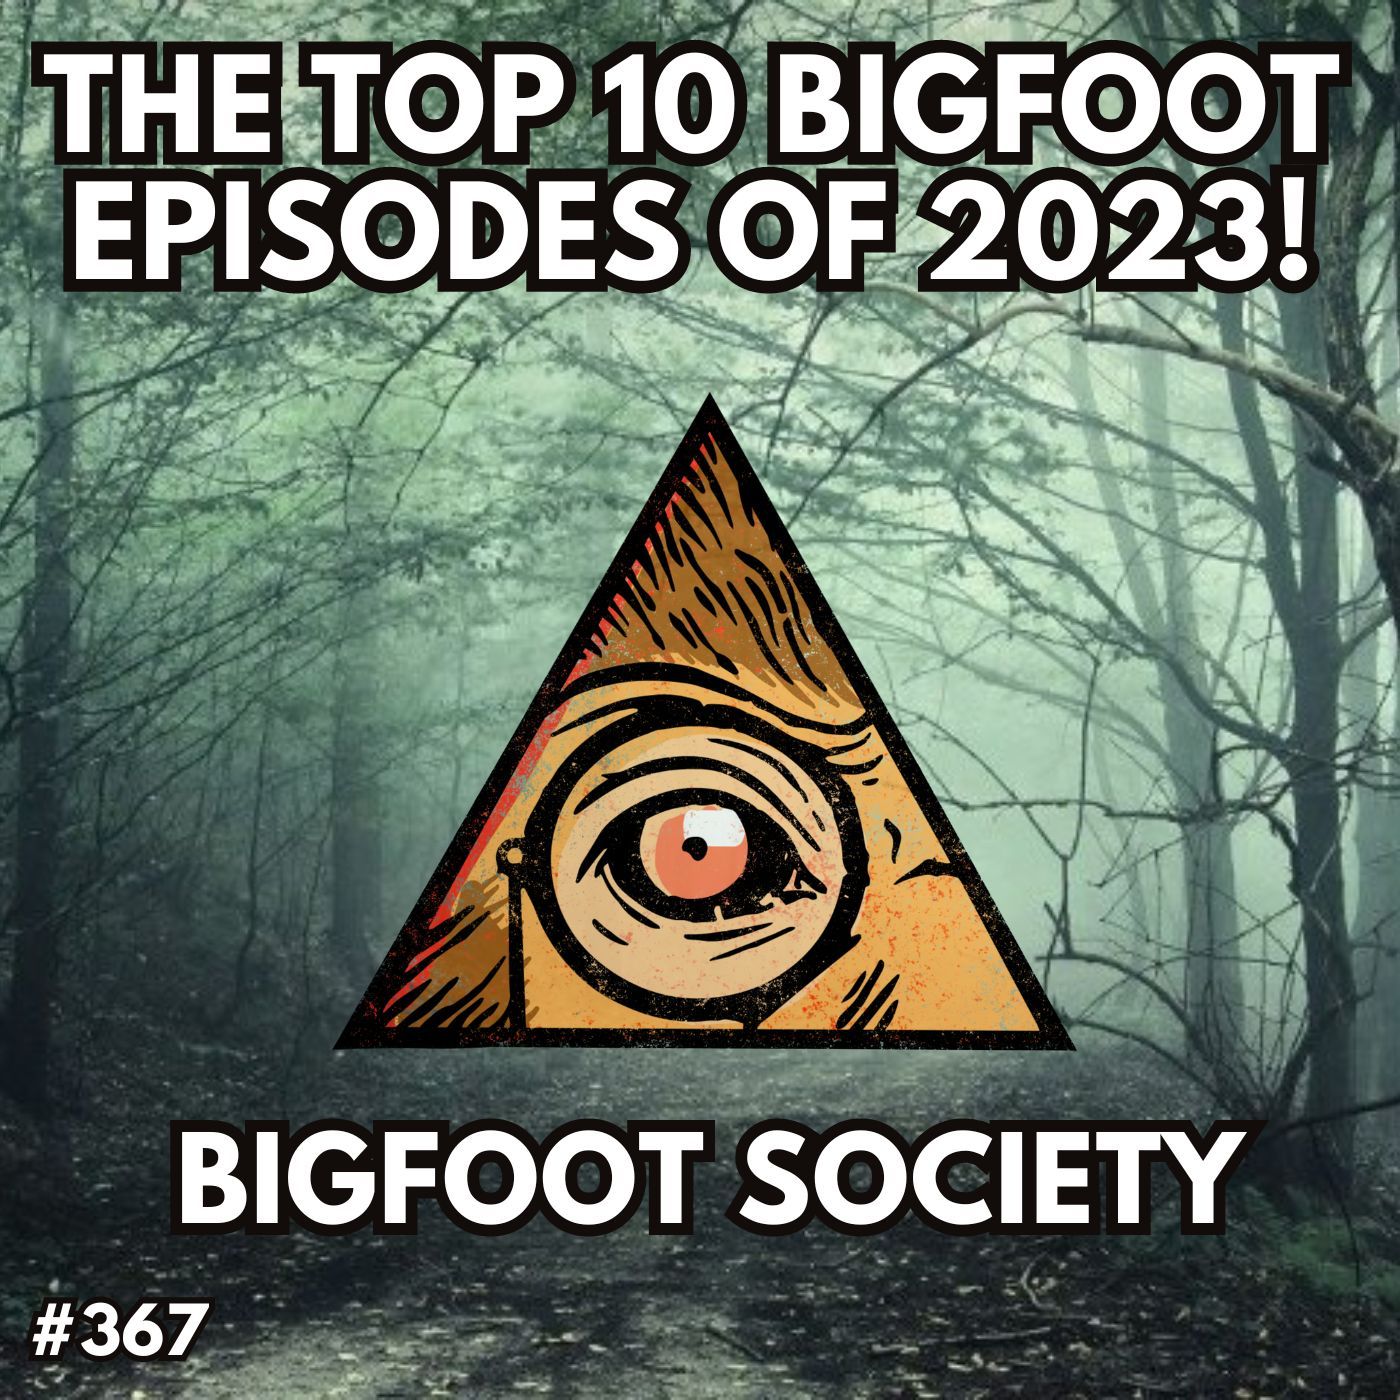 Top 10 Bigfoot Episode of 2023!